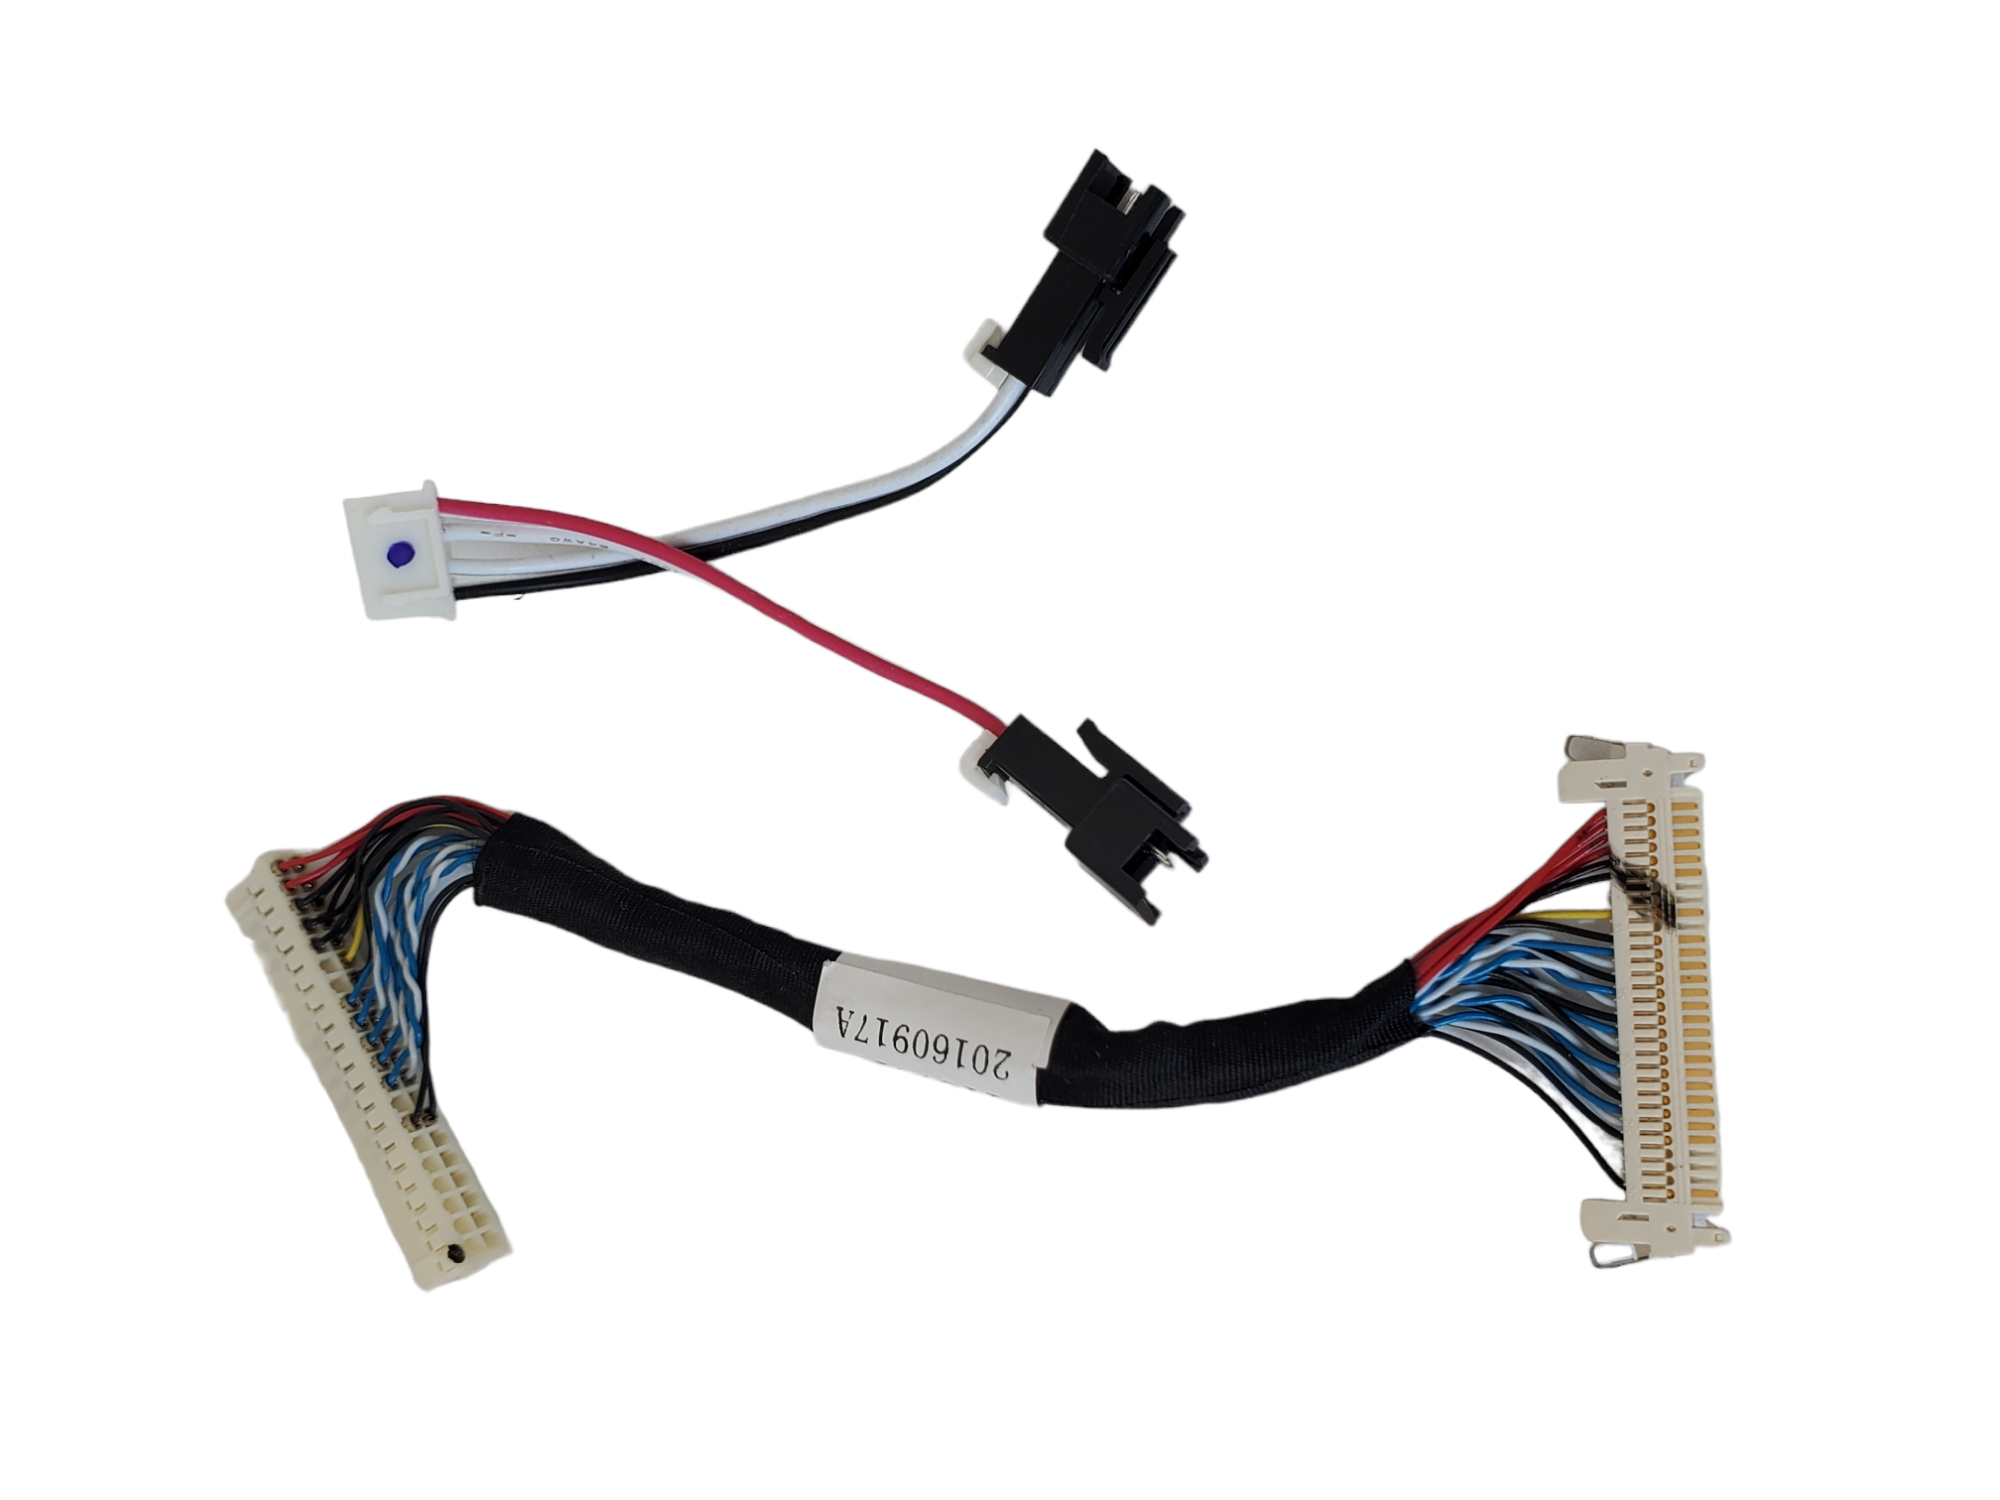 modulo de wifi, sensor infrarrojo, botonera y cables de alimentación Hisense 32H5132